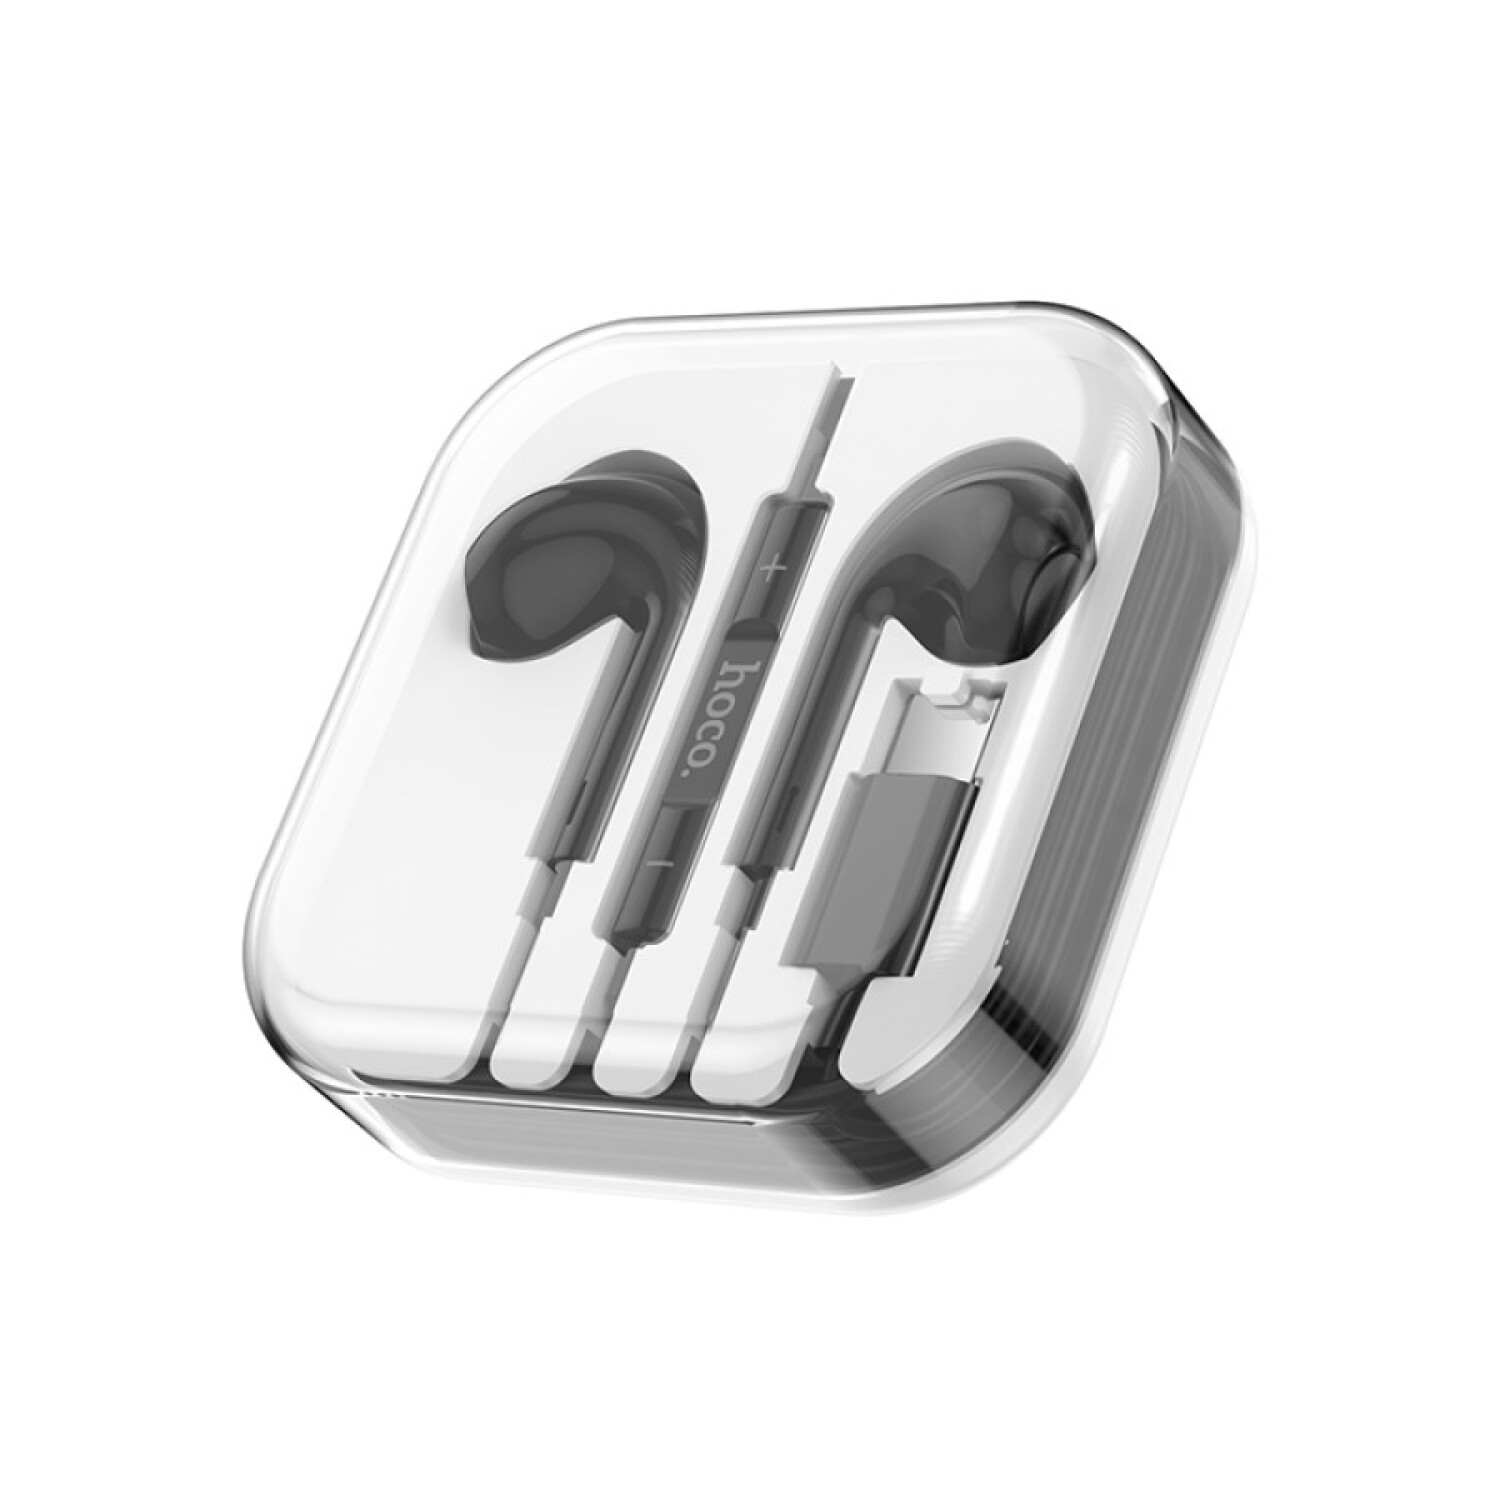 Auriculares de metal con cable USB tipo C en la oreja Auriculares